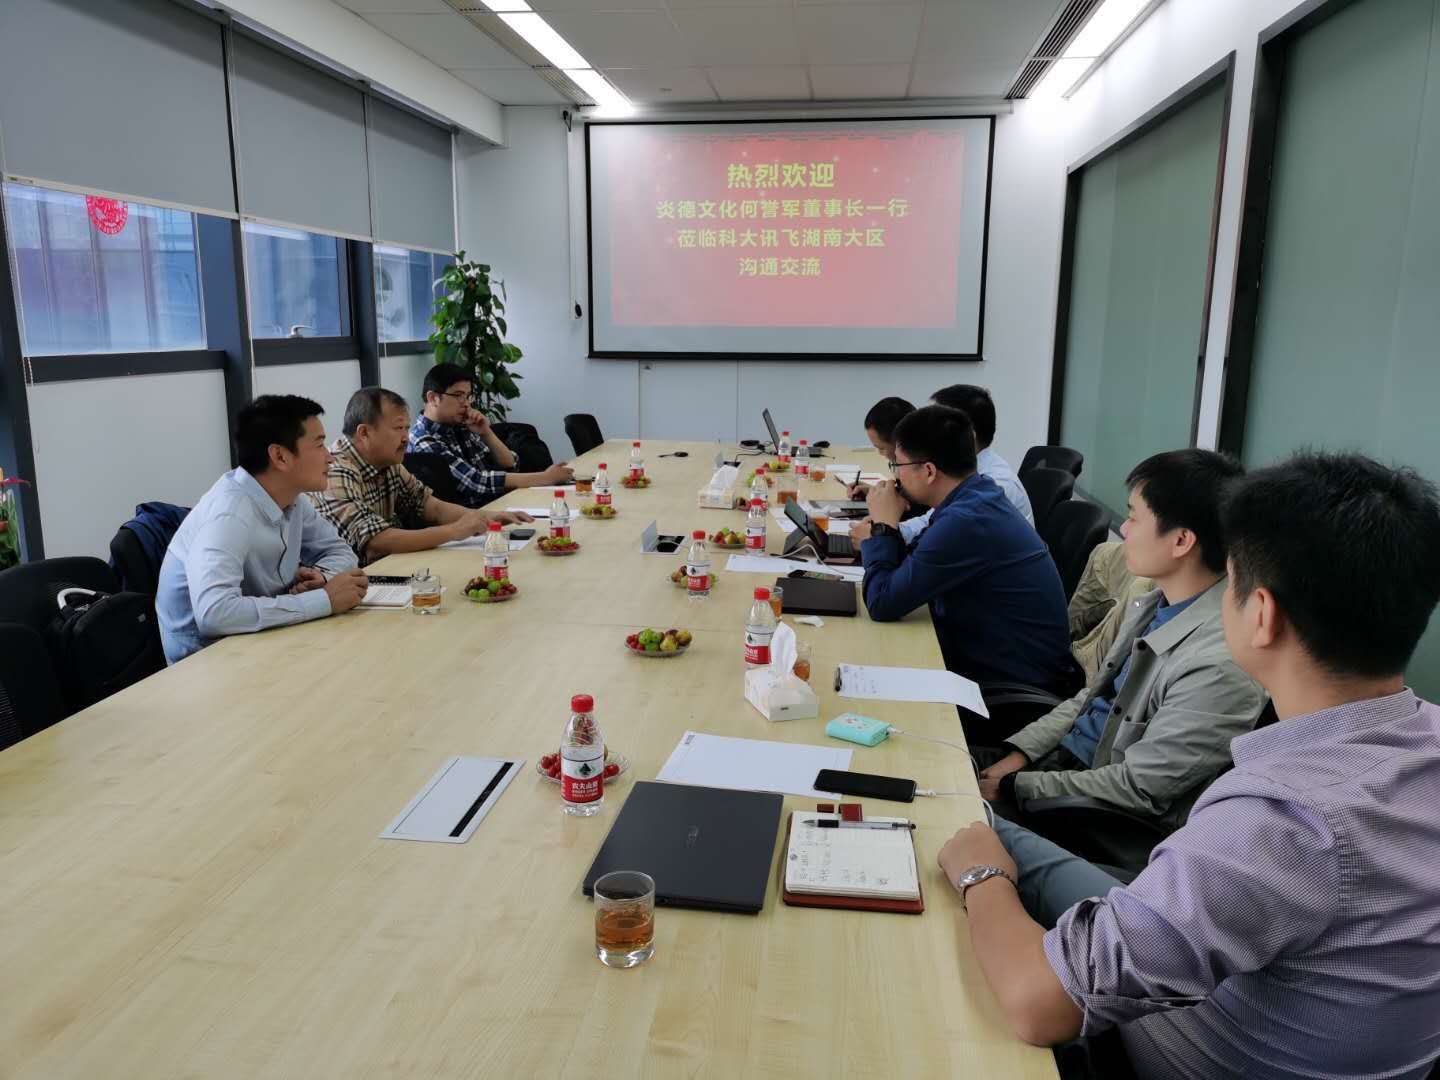 炎德文化何誉军先生来到科大讯飞湖南分公司对双方战略合作一年来的工作和未来合作进行了深入交流